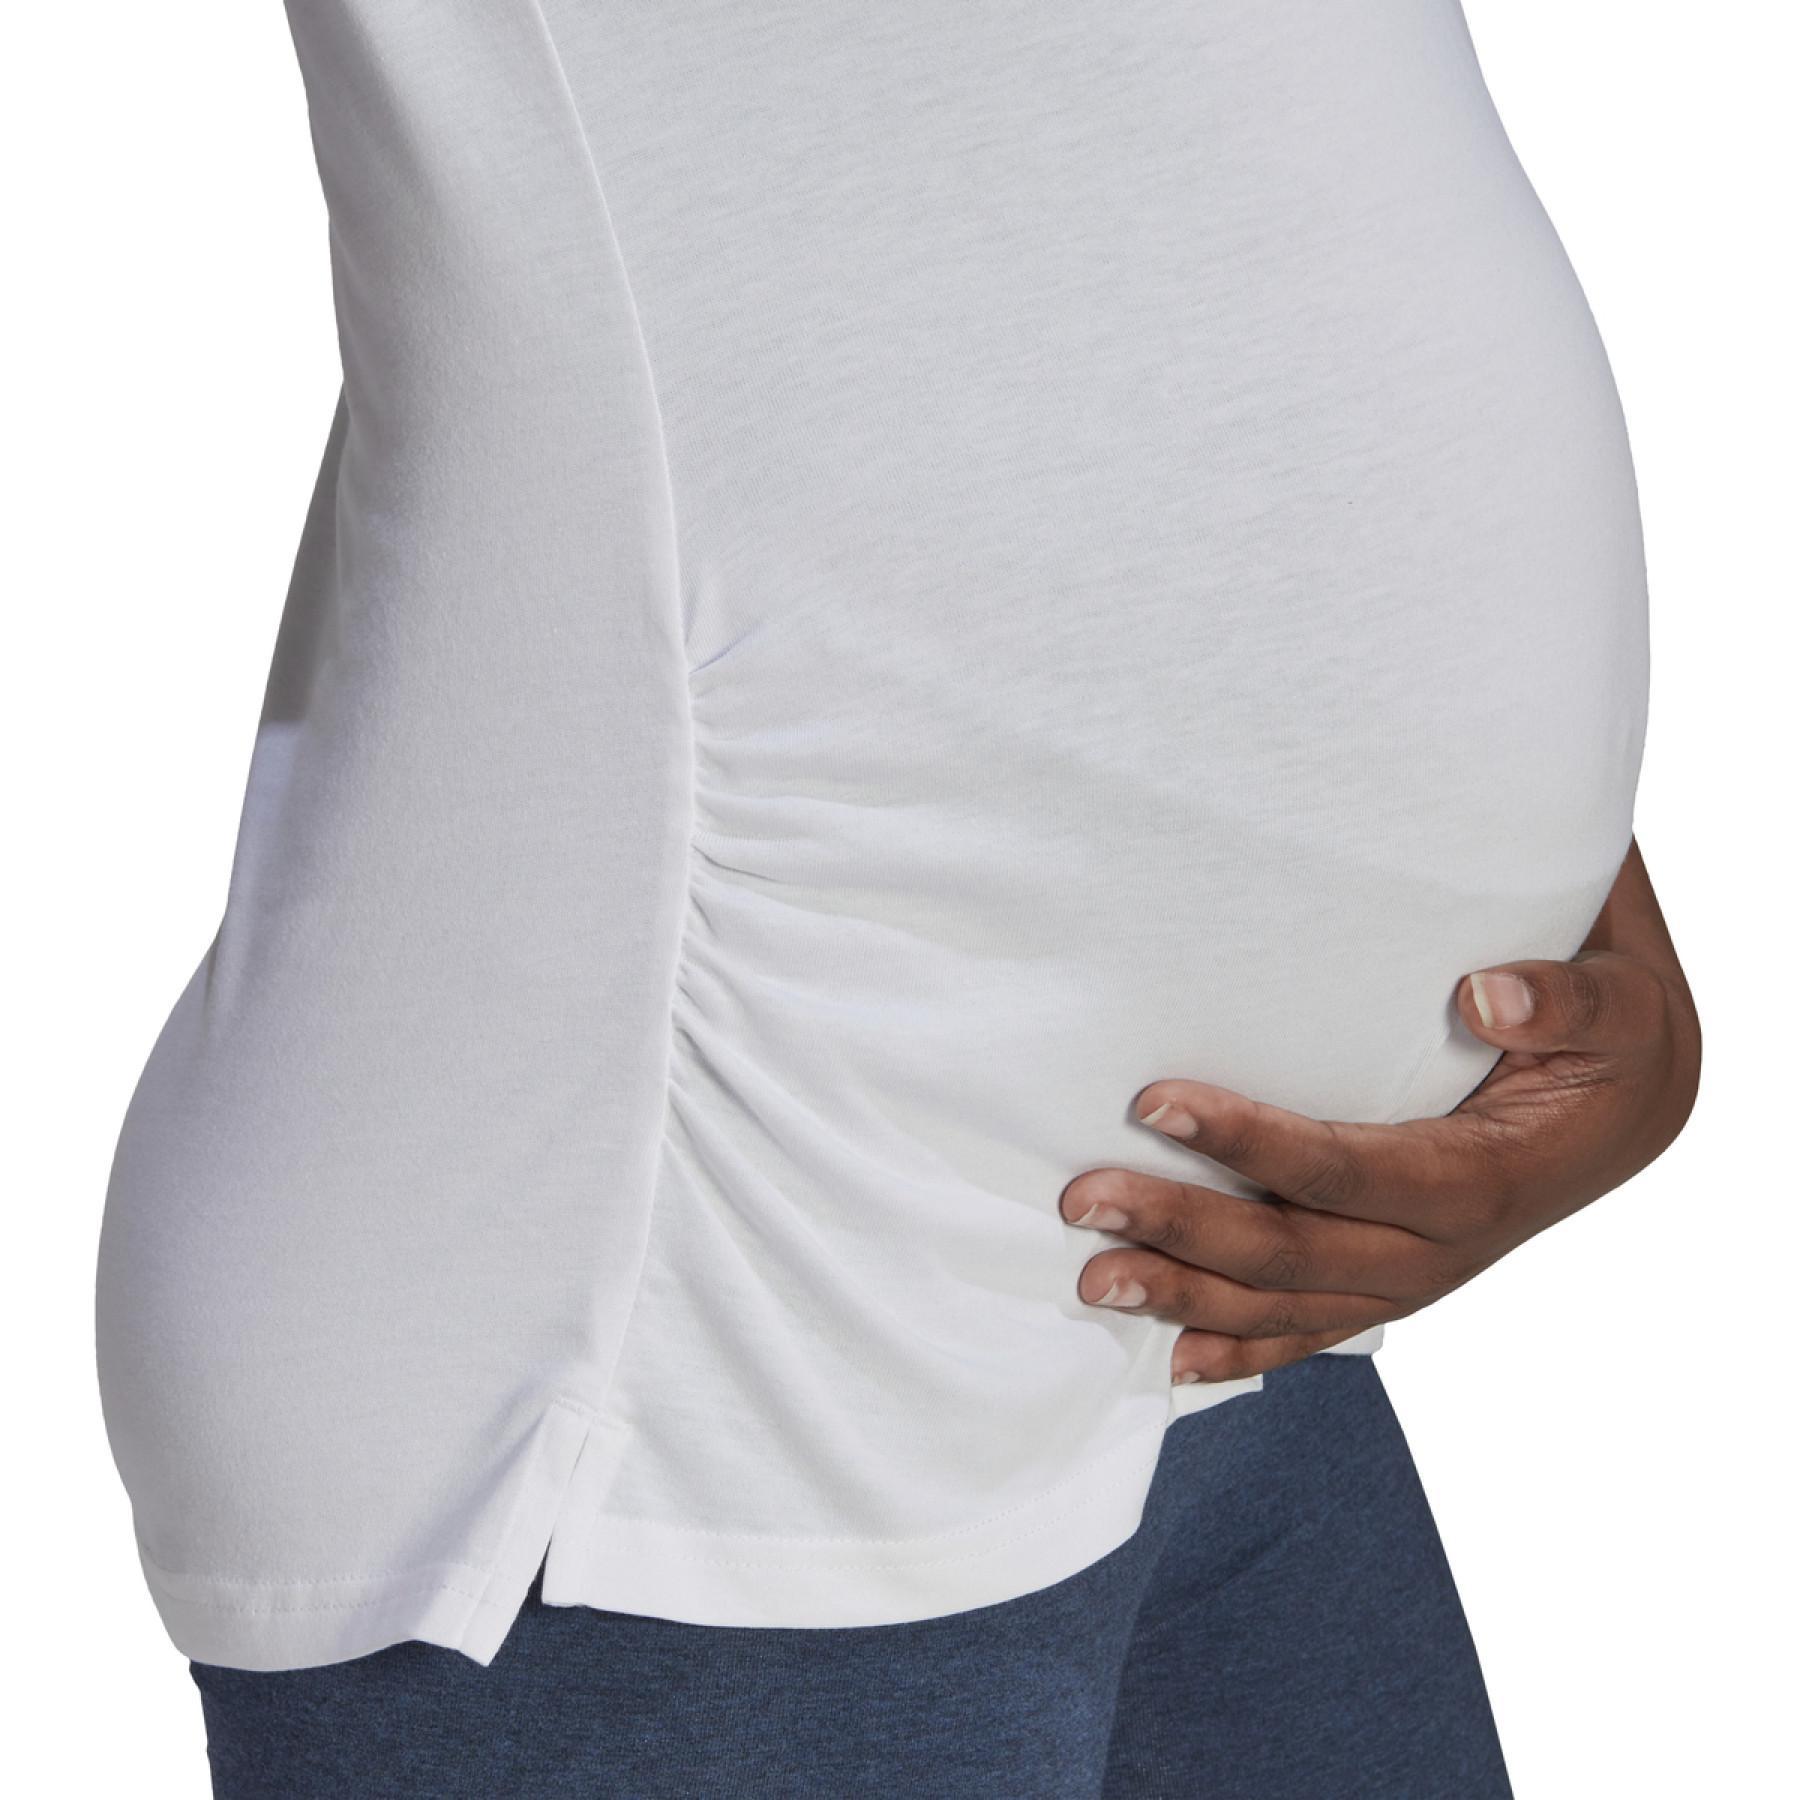 Women's T-shirt adidas Essentials Cotton Maternité